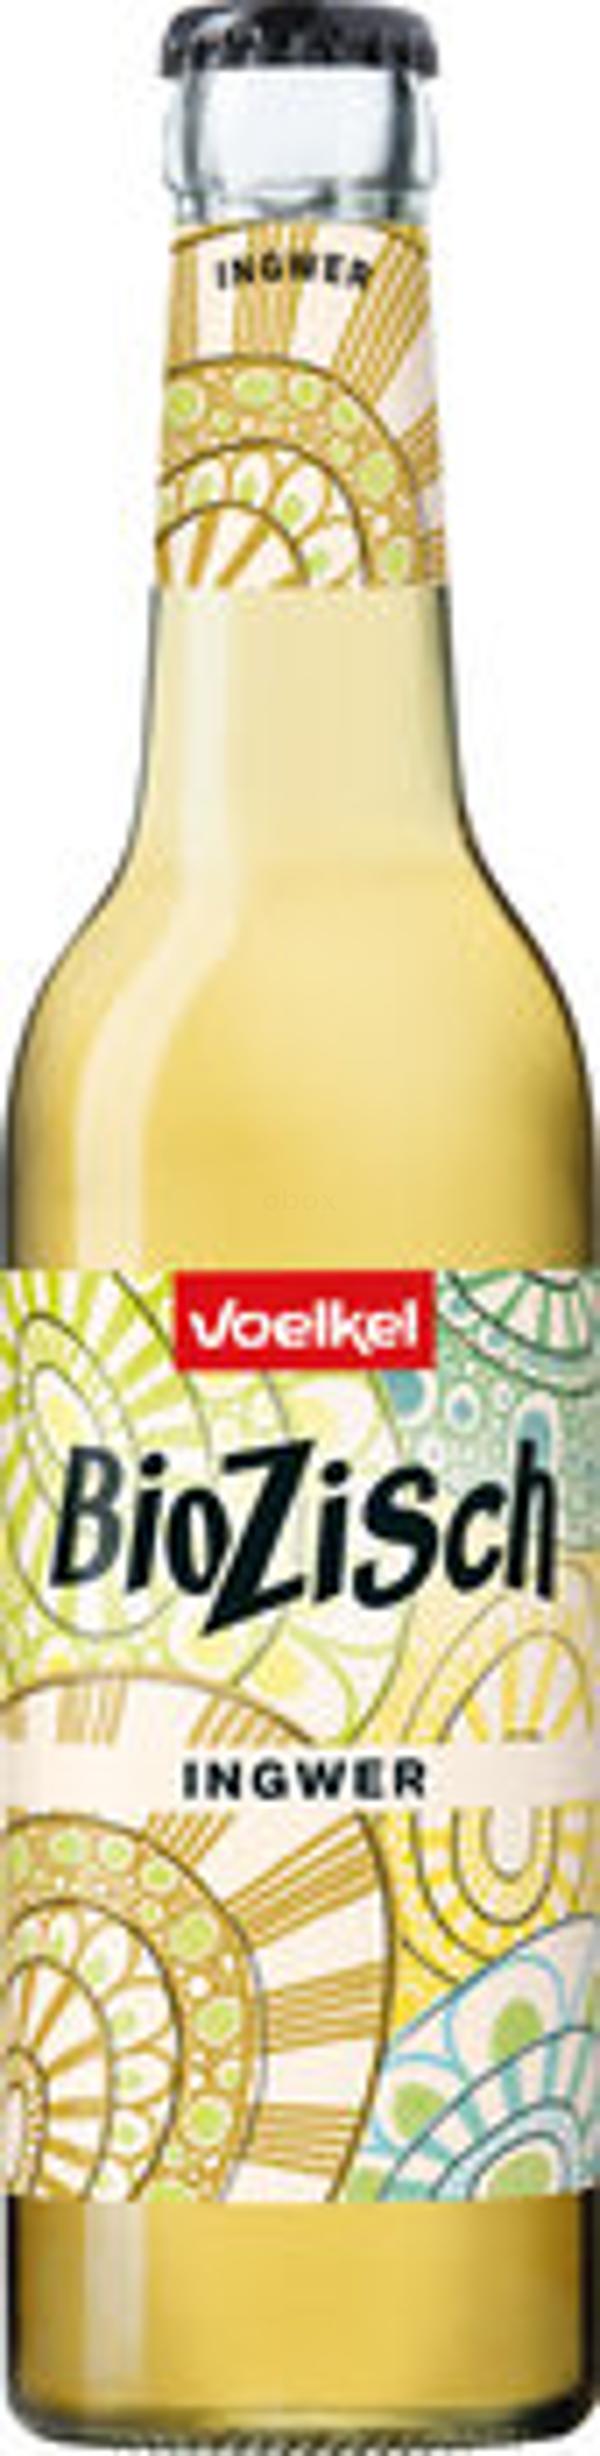 Produktfoto zu BioZisch Ingwer Kiste 12*0,33L